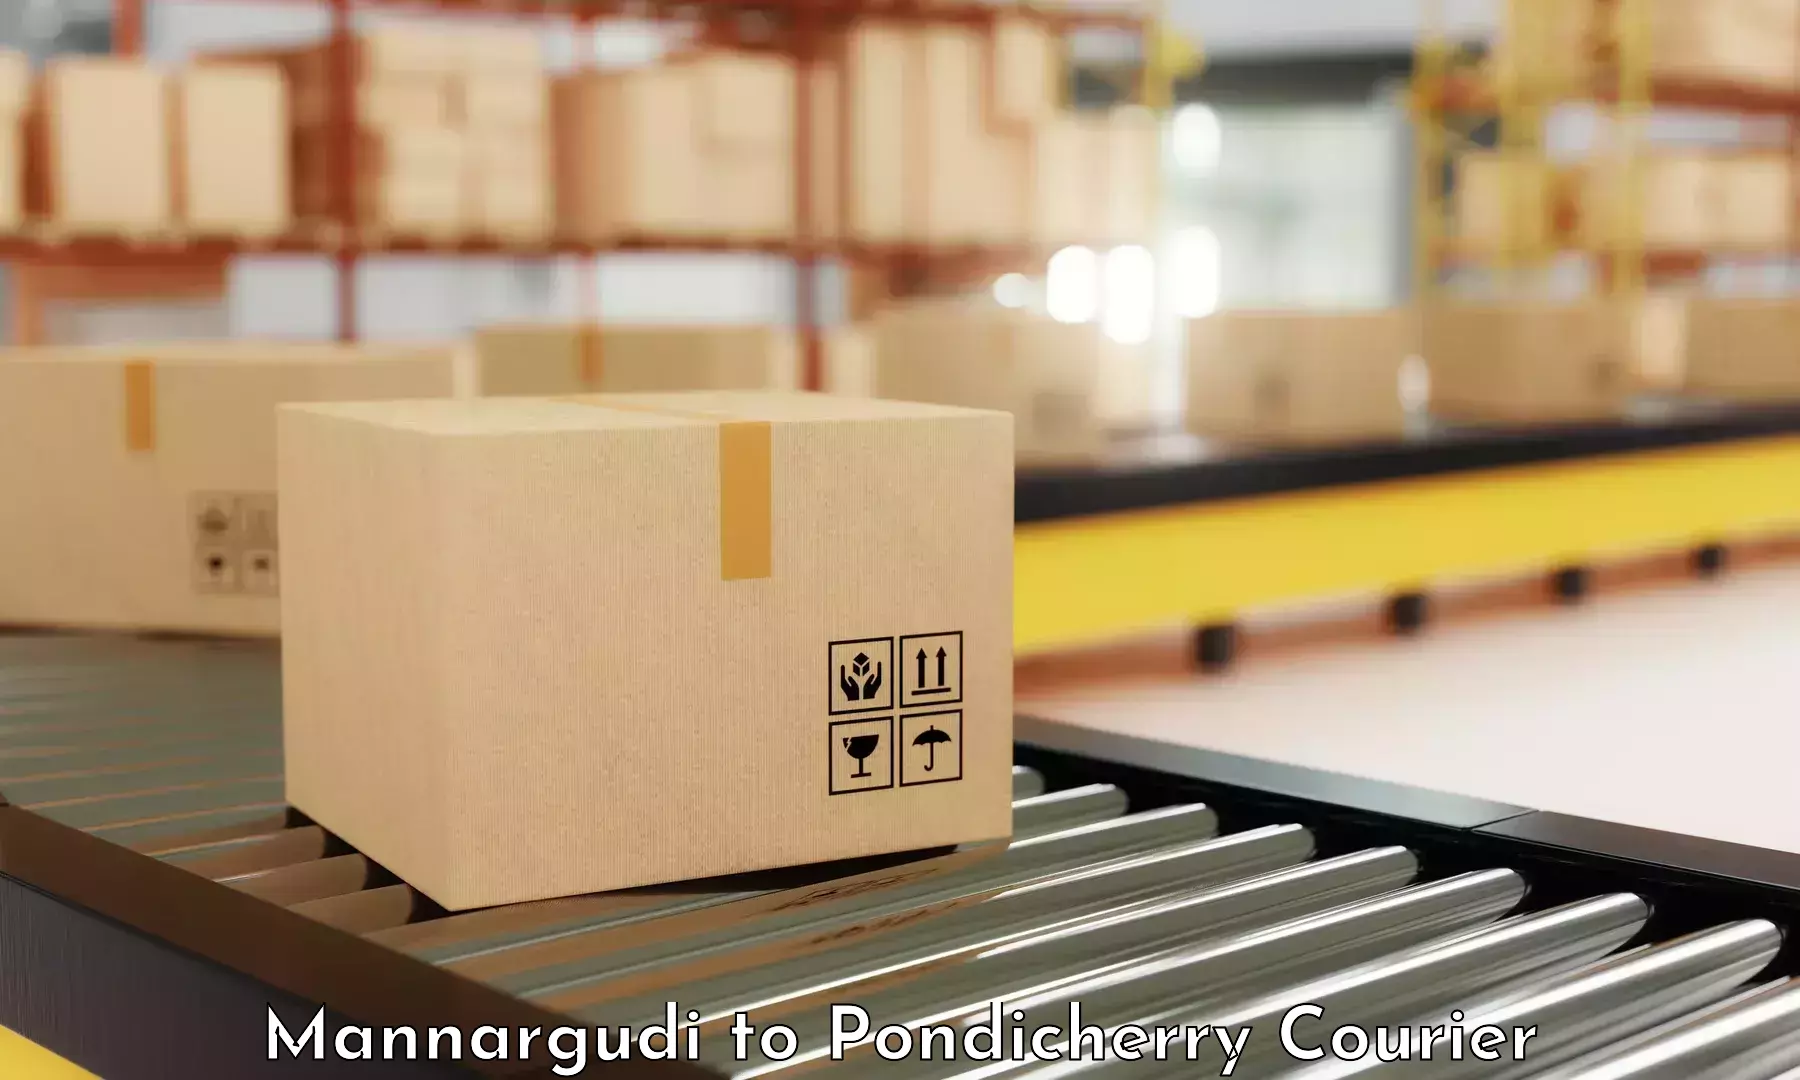 Courier service innovation Mannargudi to Pondicherry